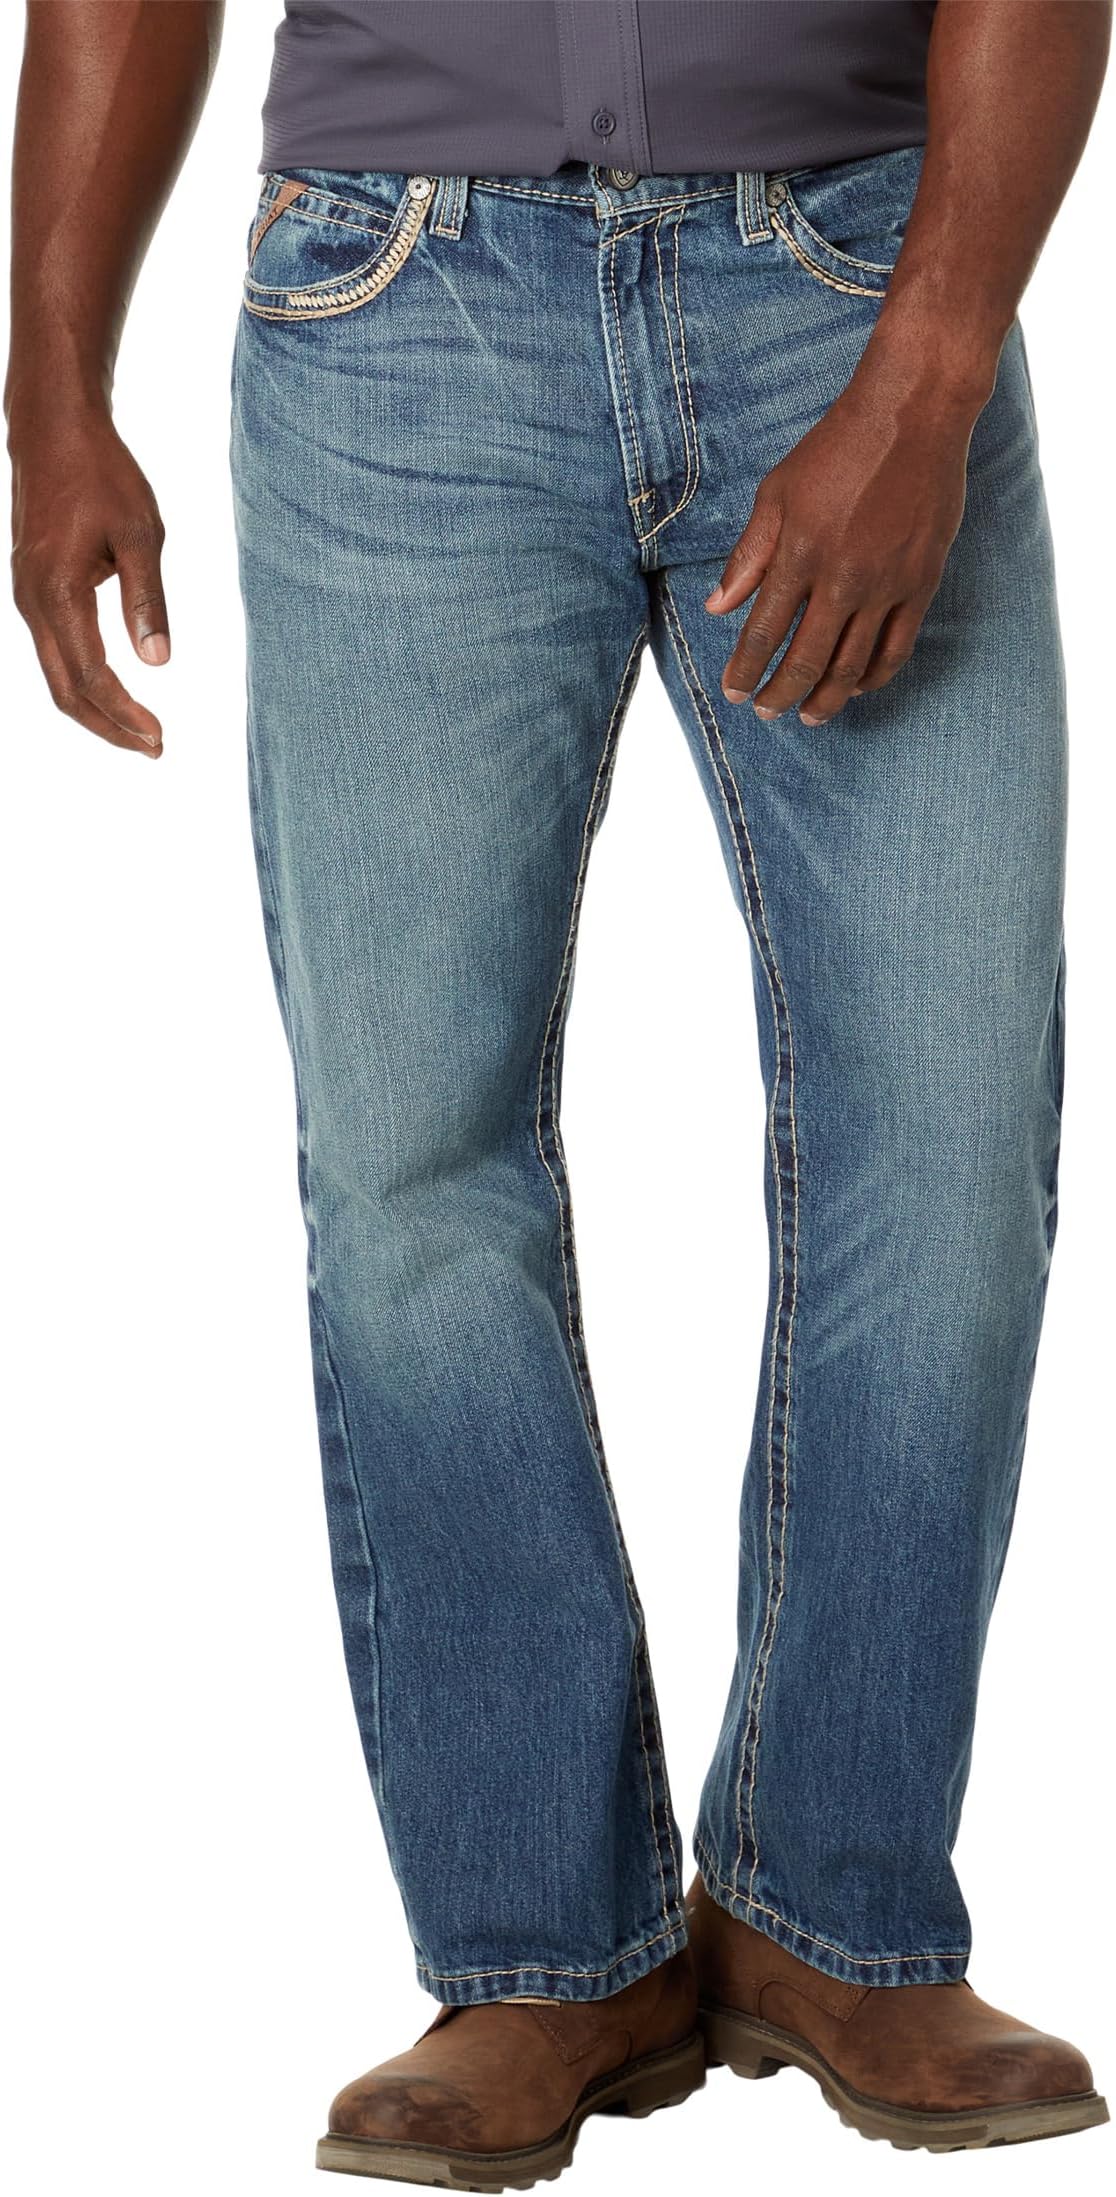 Джинсы M5 Ridgeline Slim Straight Leg Jeans Ariat, цвет Gambler